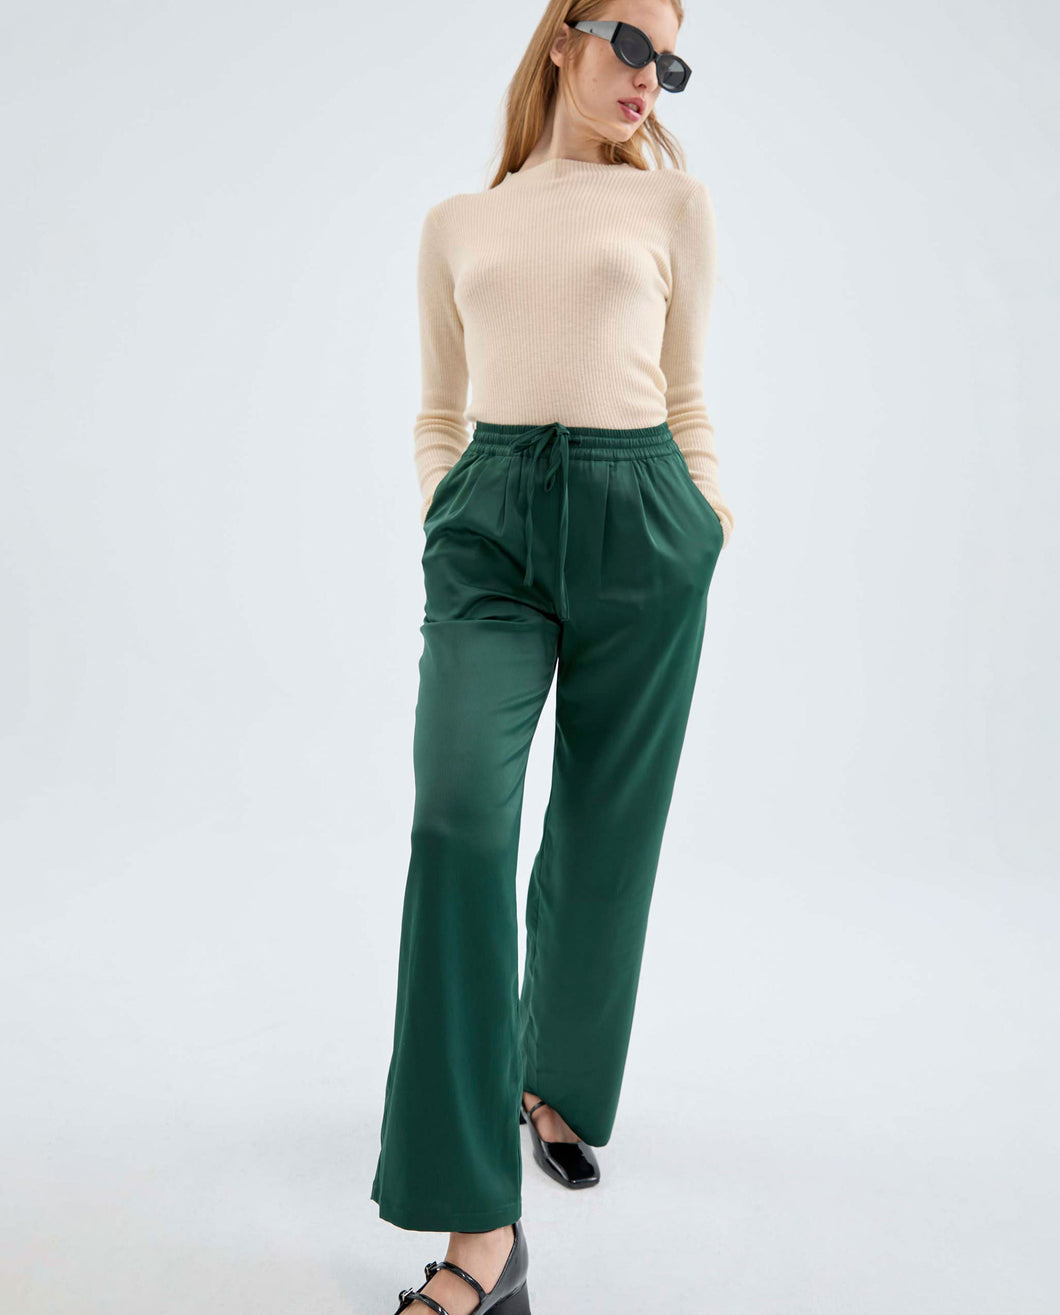 Compania Fantastica Silky Trousers - Green